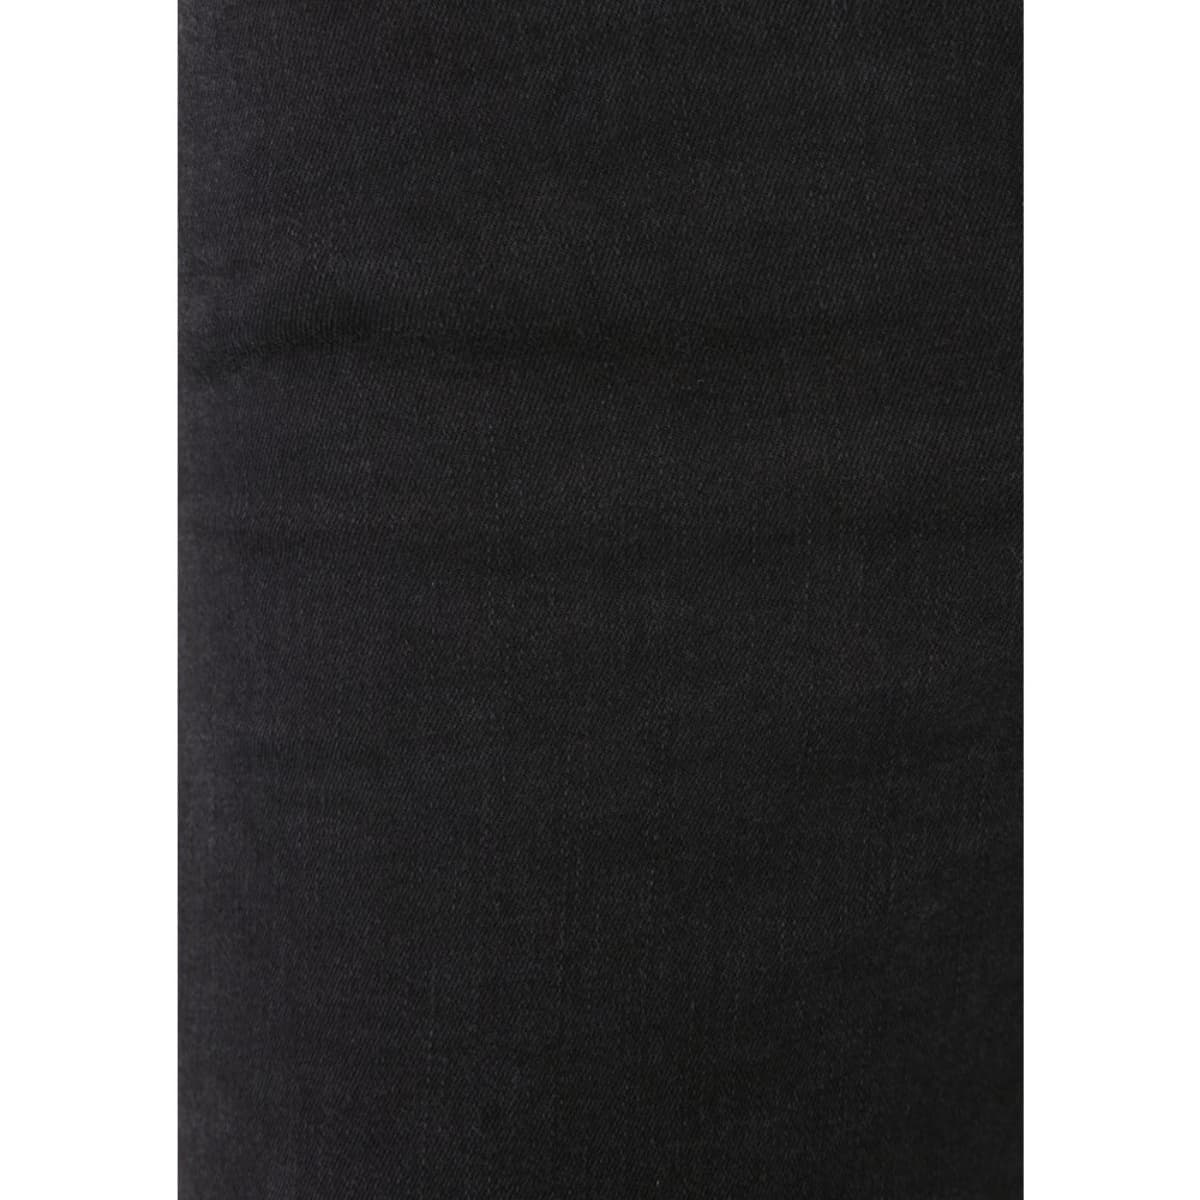 Mavi Acaip Move Kadın Siyah Kot Pantolon (101065-32045)